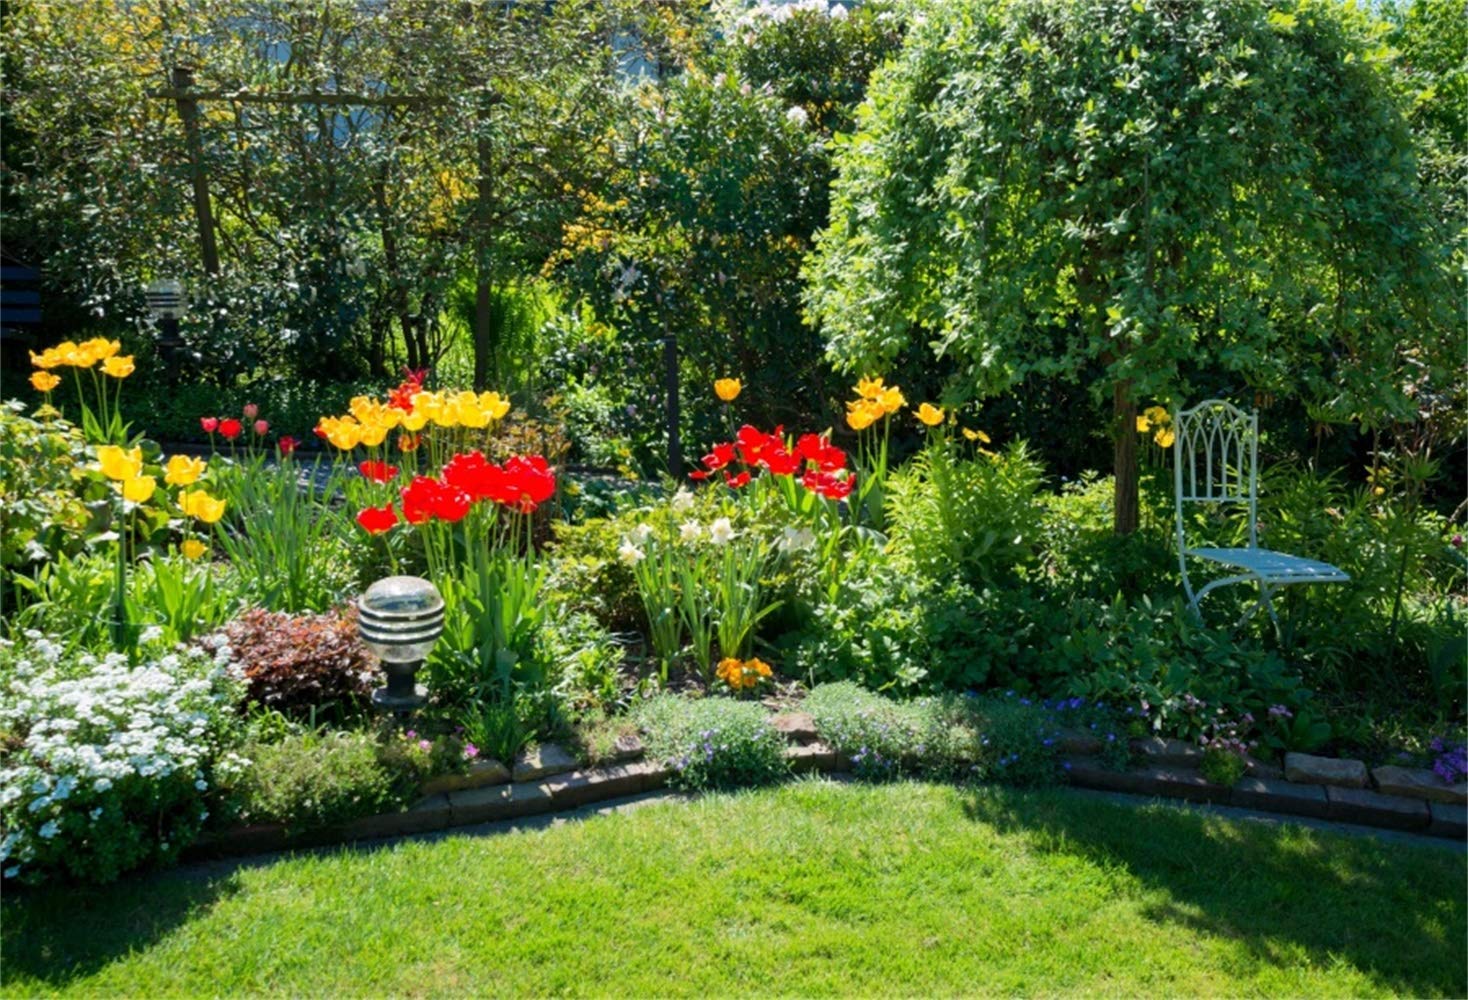 Amazon.com, Laeacco 7x5ft Spring Backyard Garden Scenic Backdrop